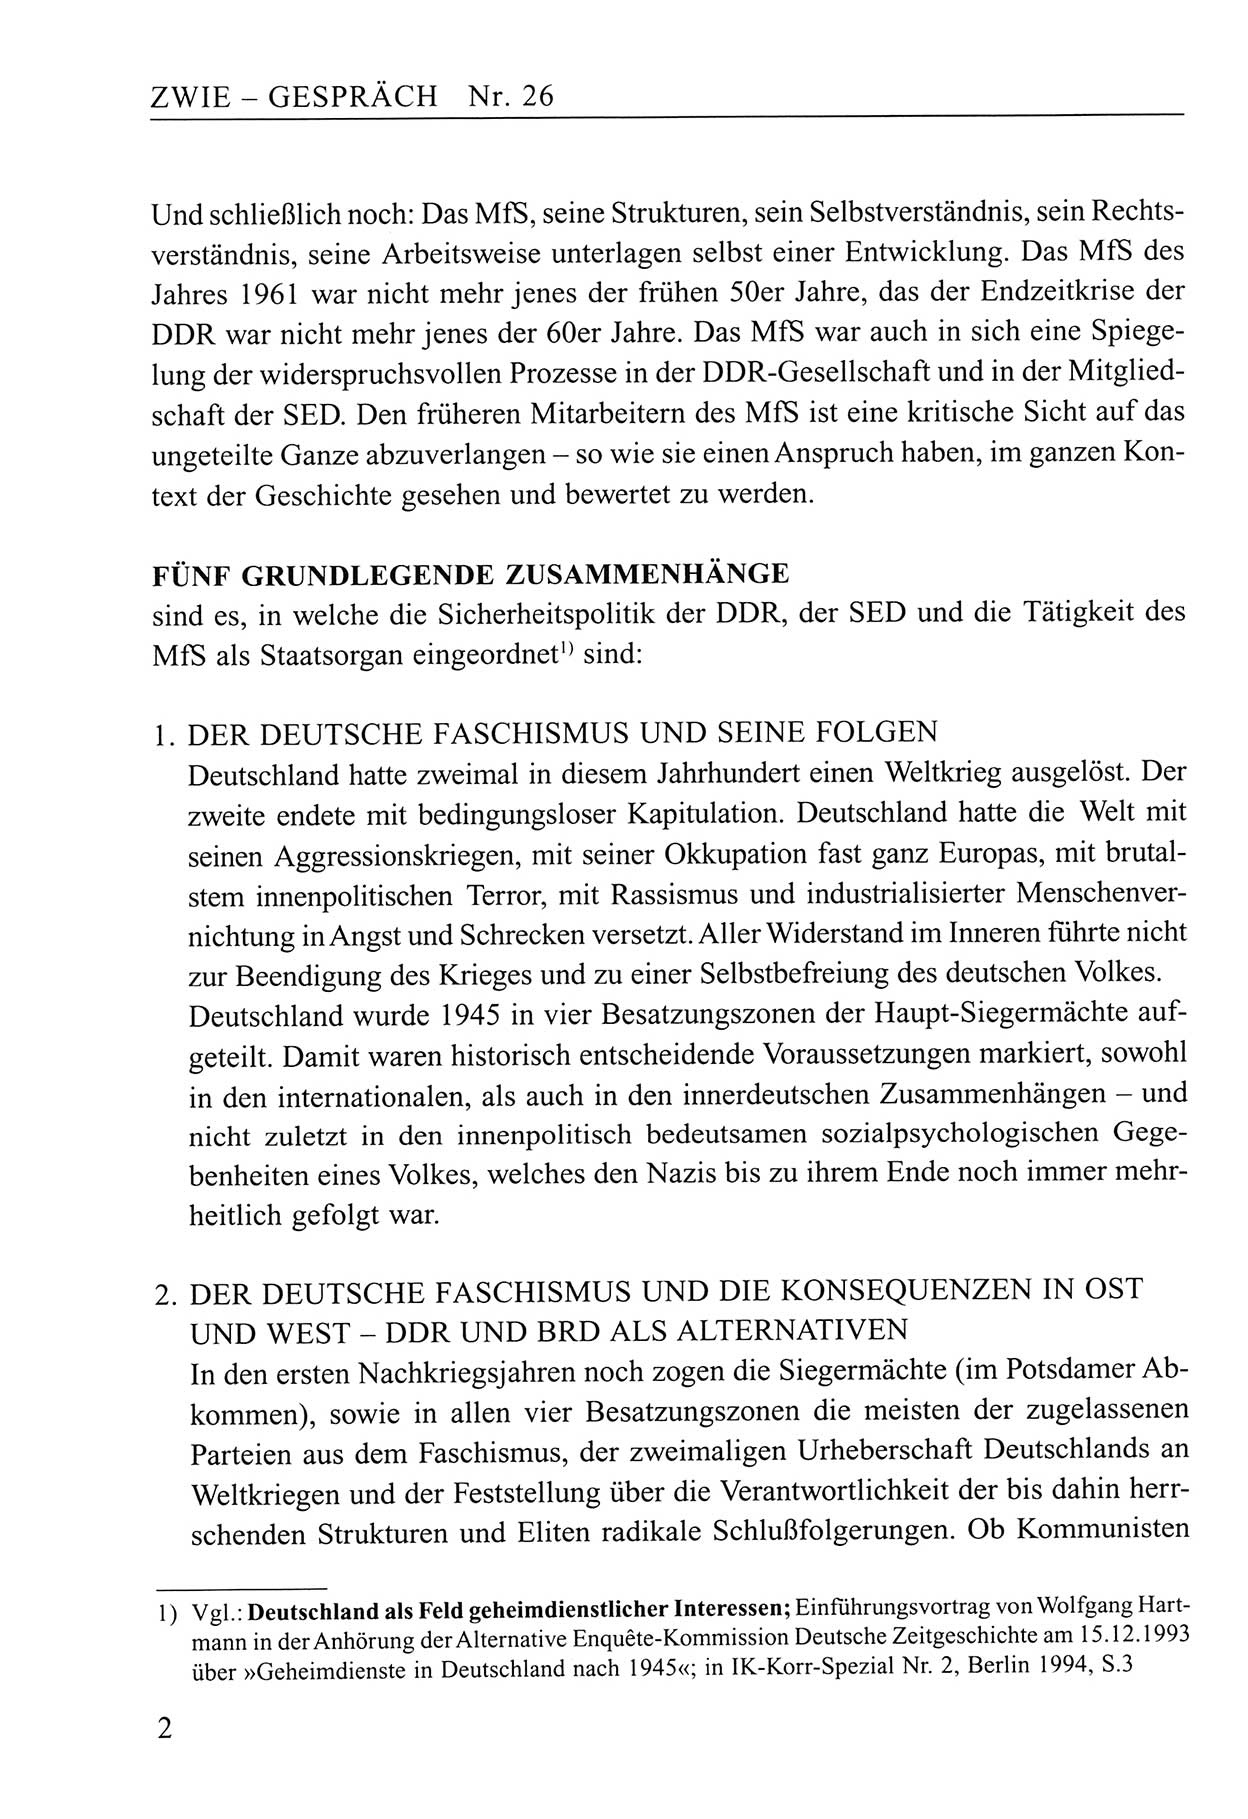 Zwie-Gespräch, Beiträge zum Umgang mit der Staatssicherheits-Vergangenheit [Deutsche Demokratische Republik (DDR)], Ausgabe Nr. 26, Berlin 1995, Seite 2 (Zwie-Gespr. Ausg. 26 1995, S. 2)